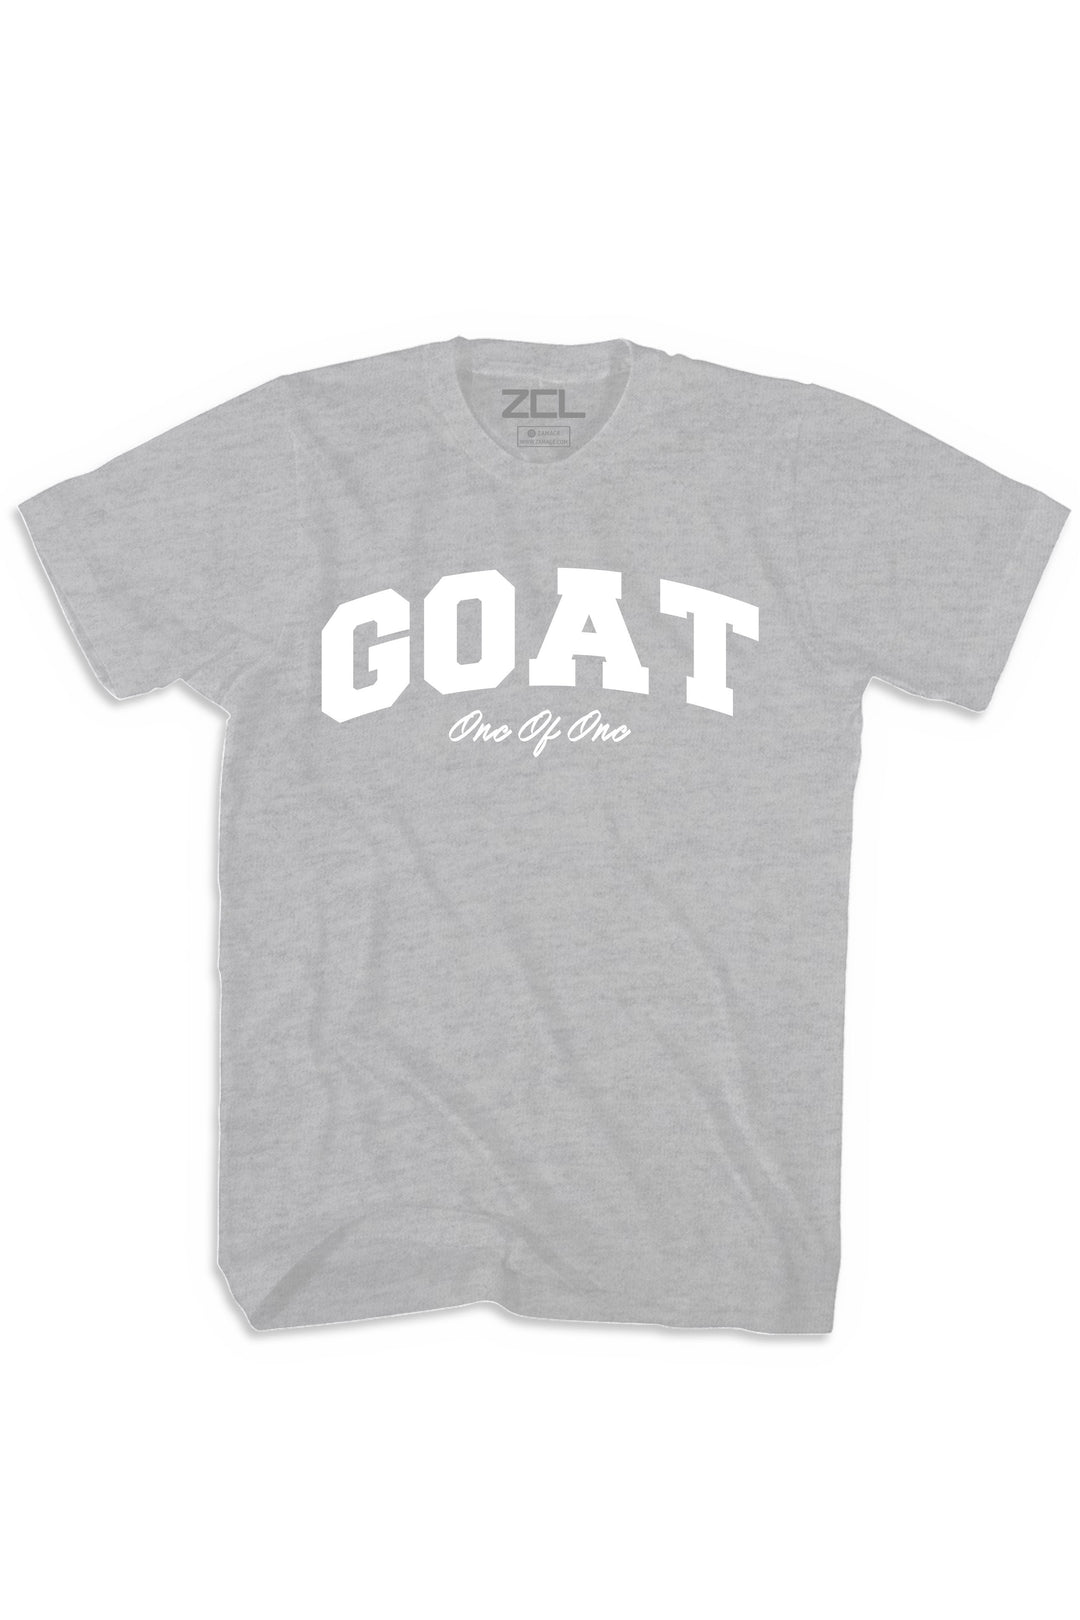 Goat Tee (White Logo) - Zamage